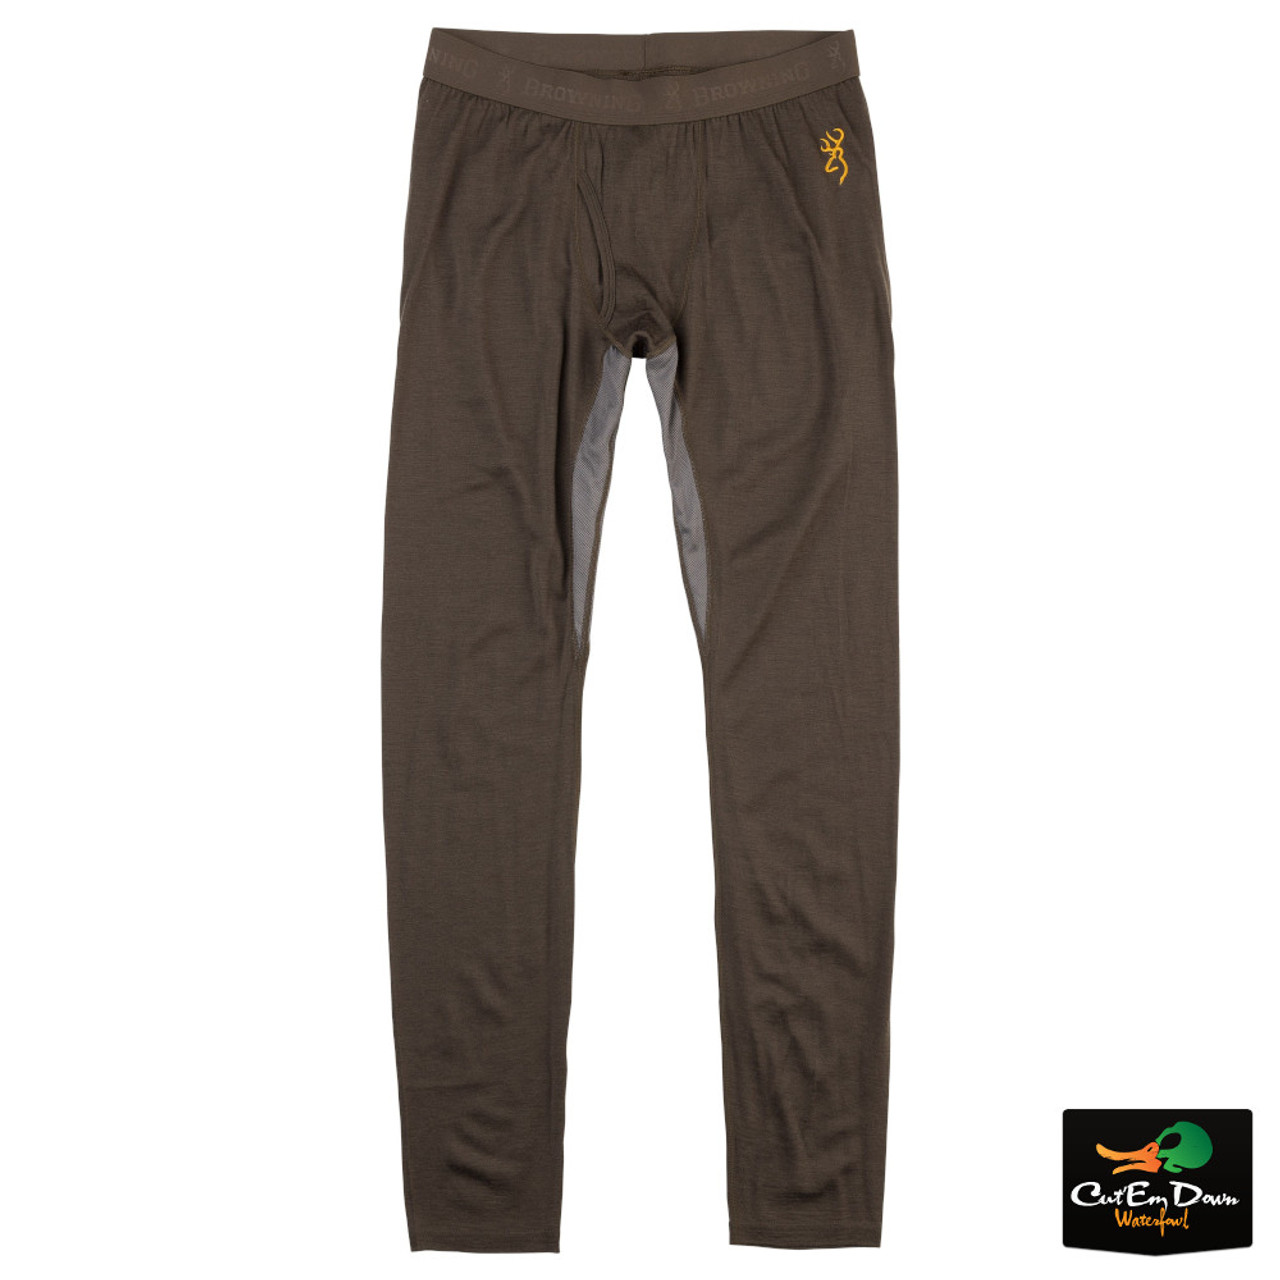 Browning Merino Wool Base Layer Pants - Major Brown